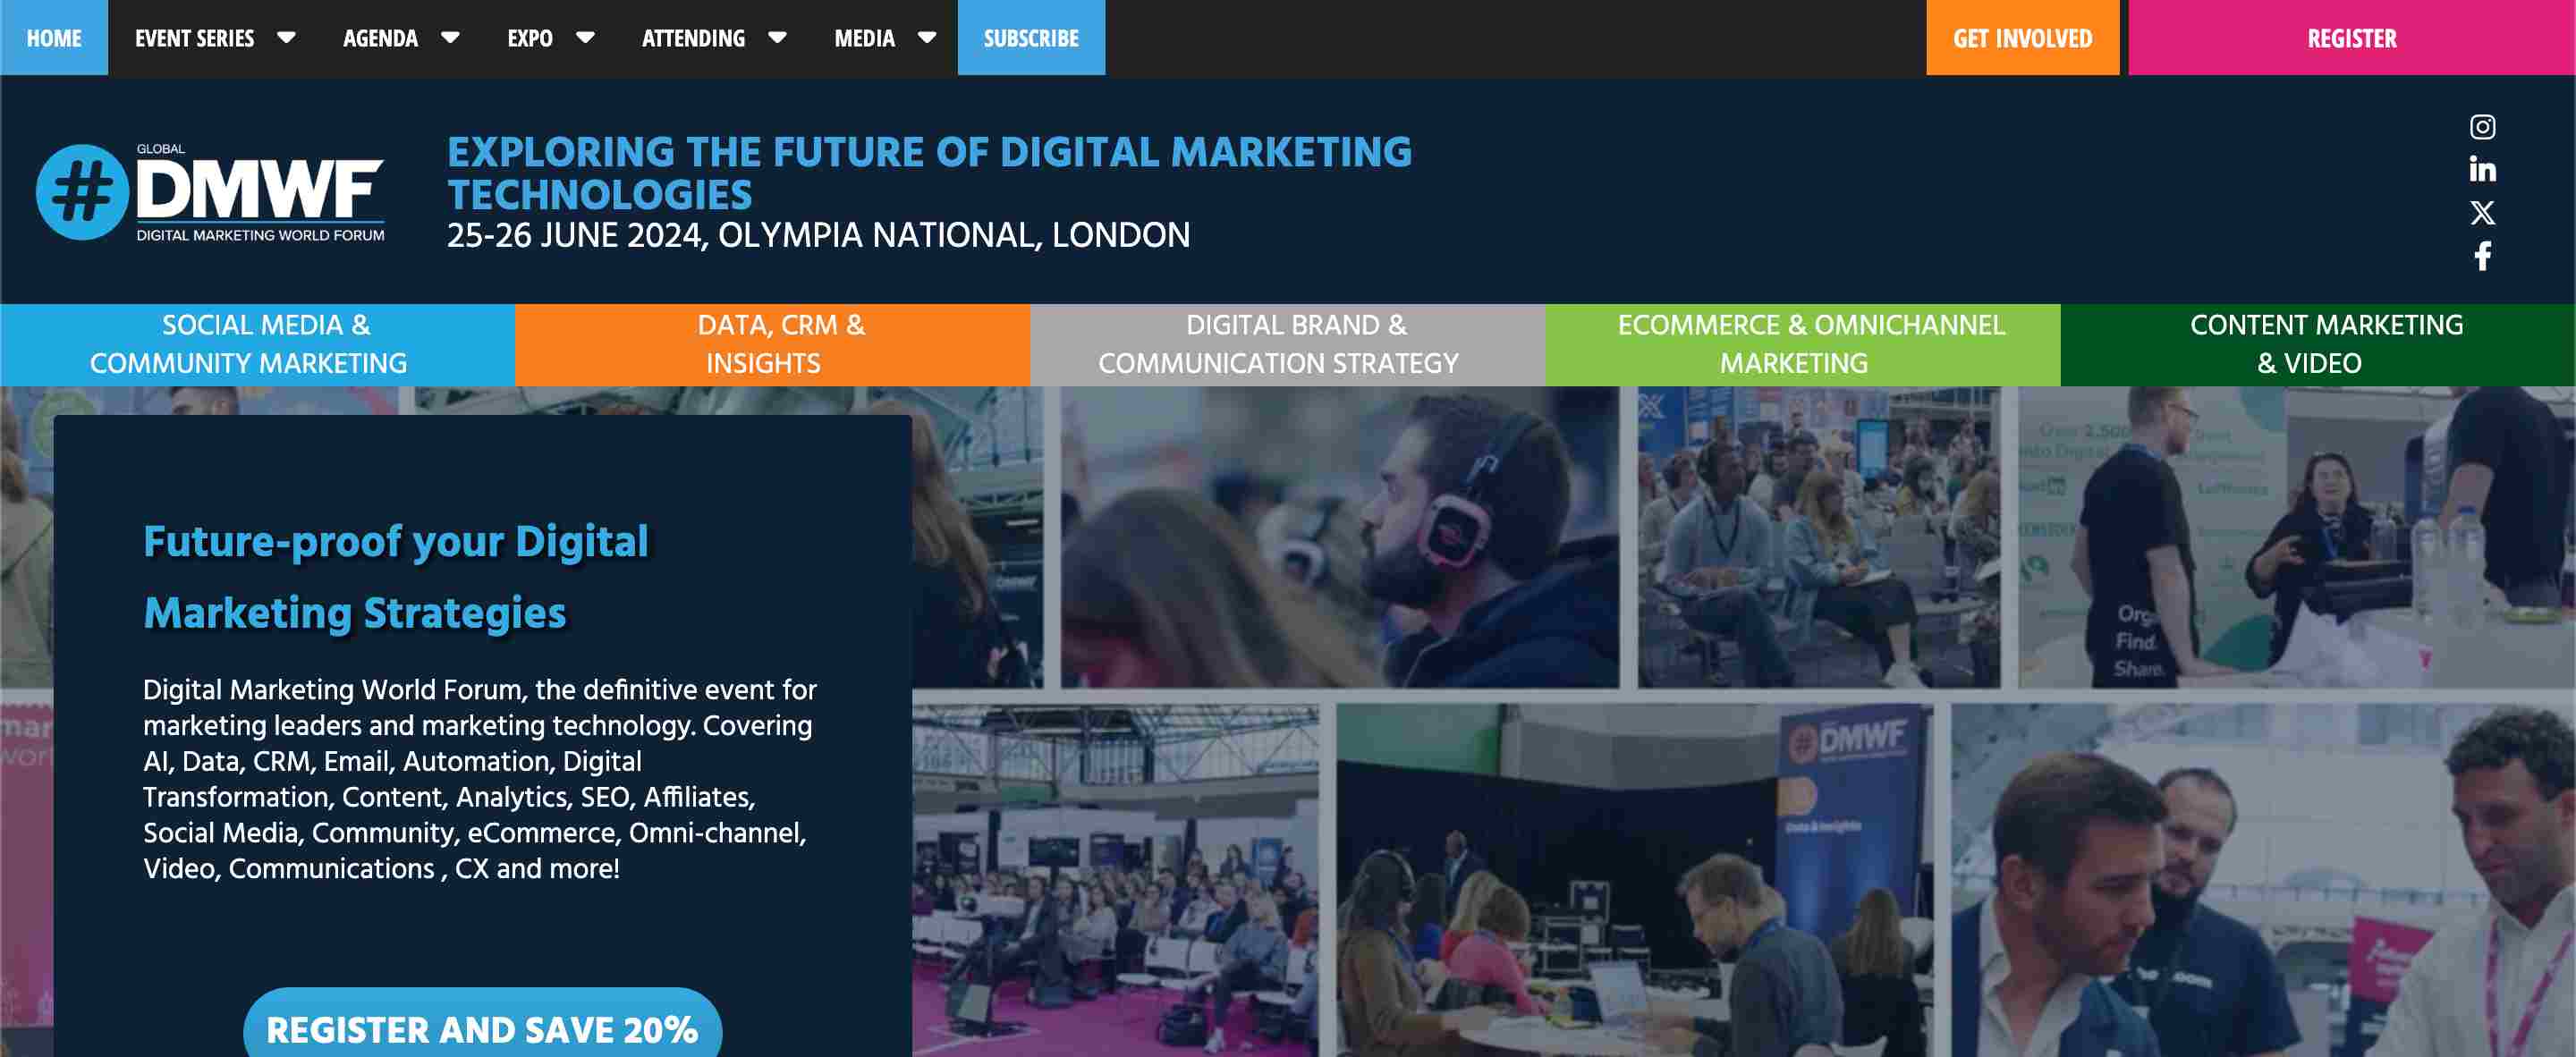 digital marketing conferences - Digital Marketing World Forum (DMWF)